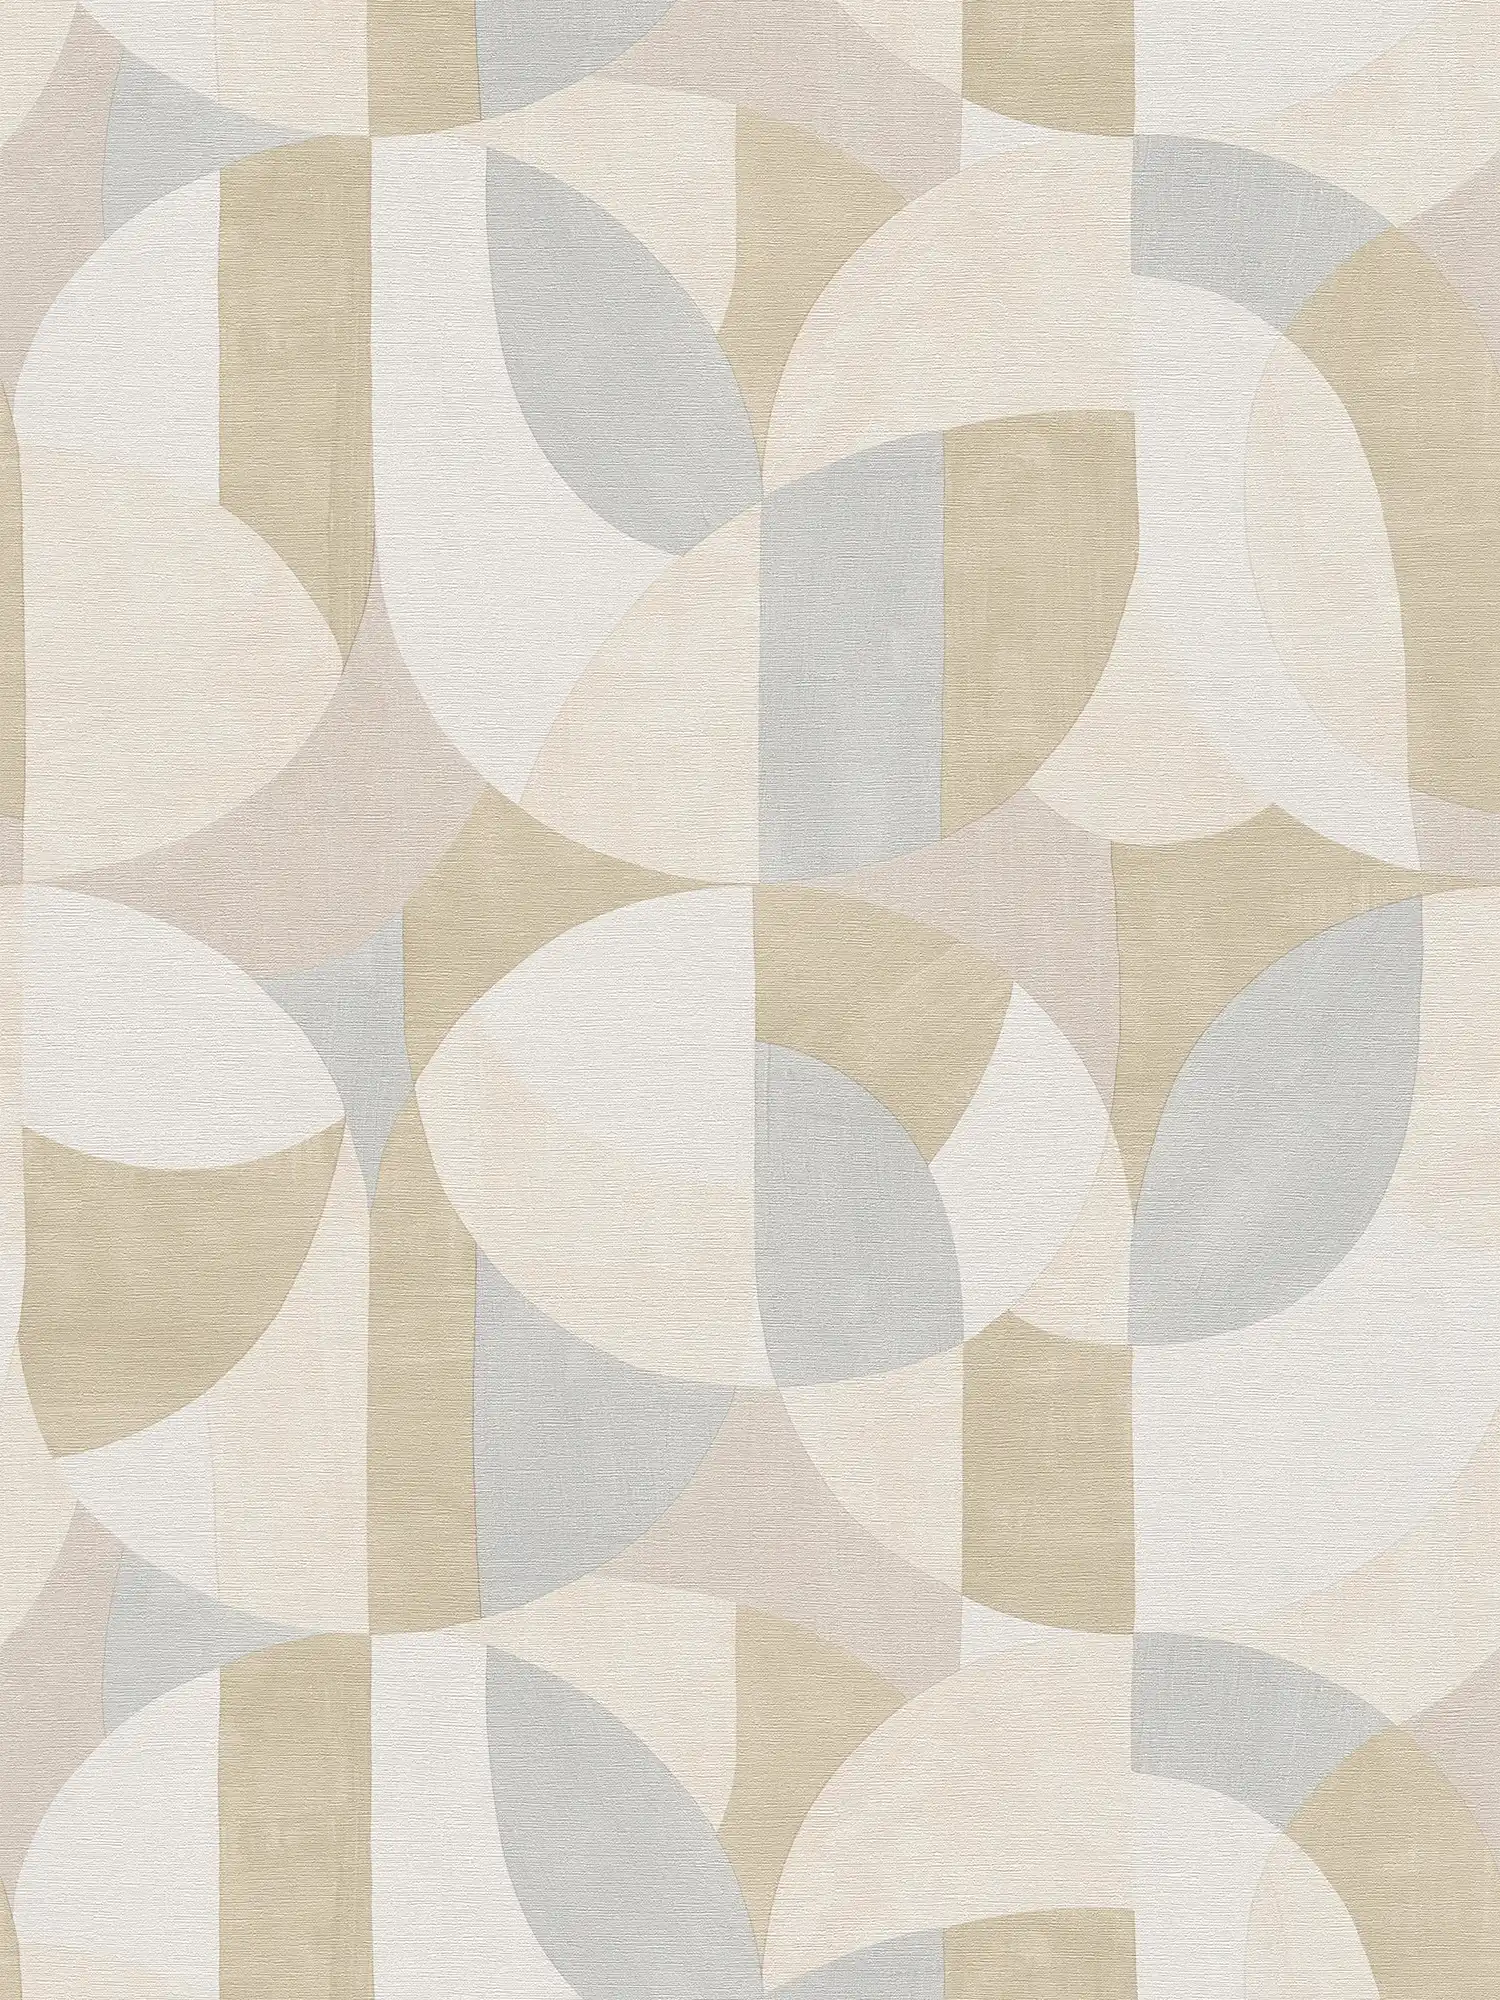         Abstrakte grafische Vliestapete im Bauhaus-Stil – Grau, Creme, Beige
    